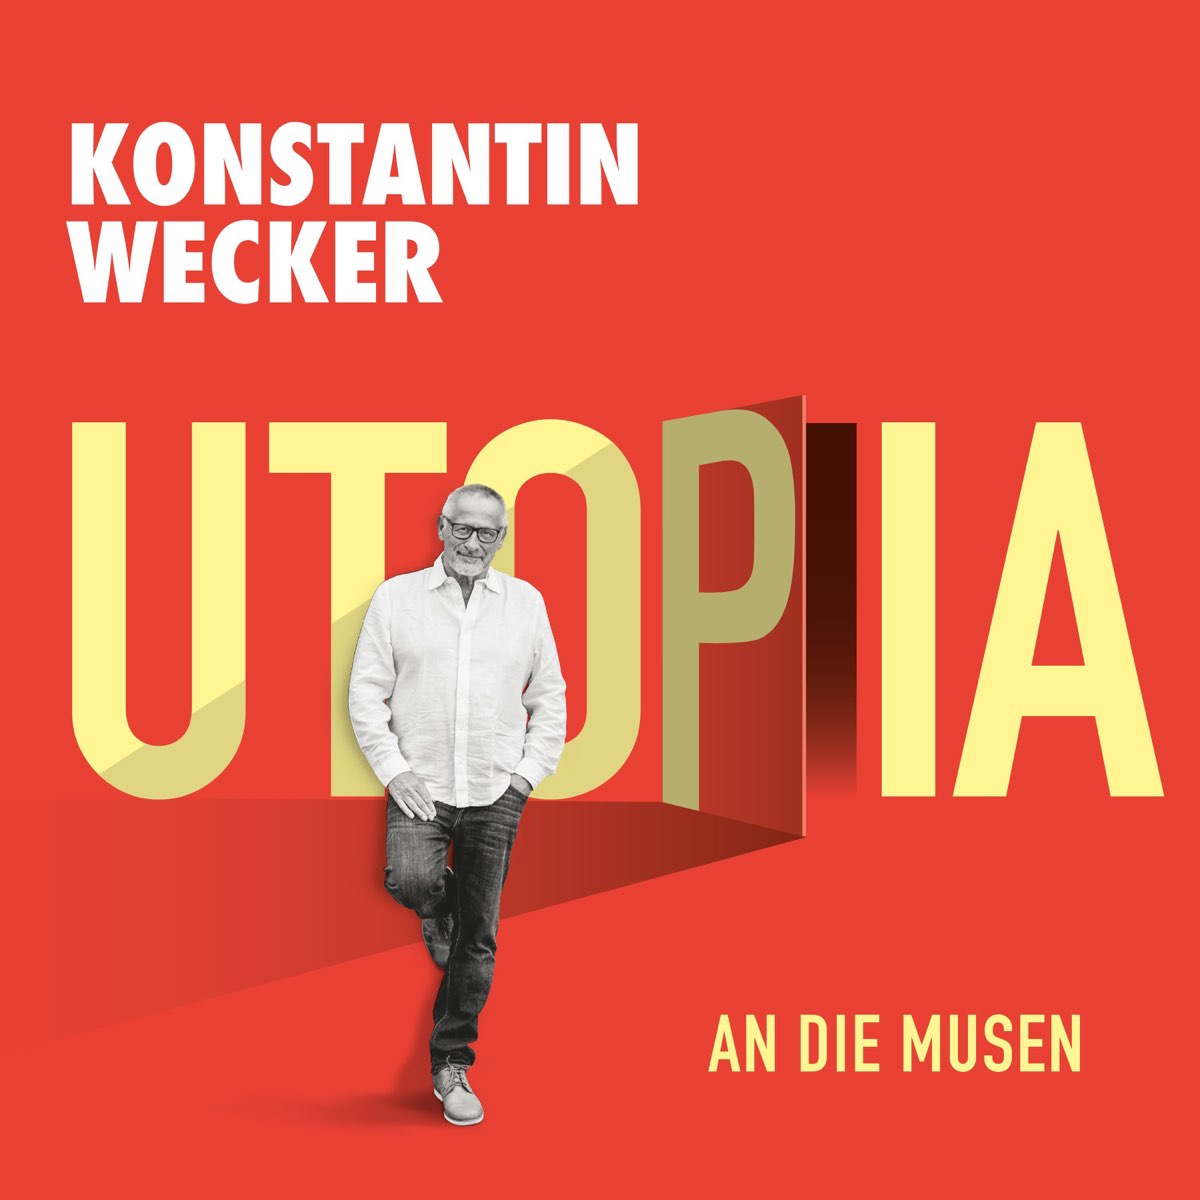 An die Musen - Single by Konstantin Wecker on Apple Music